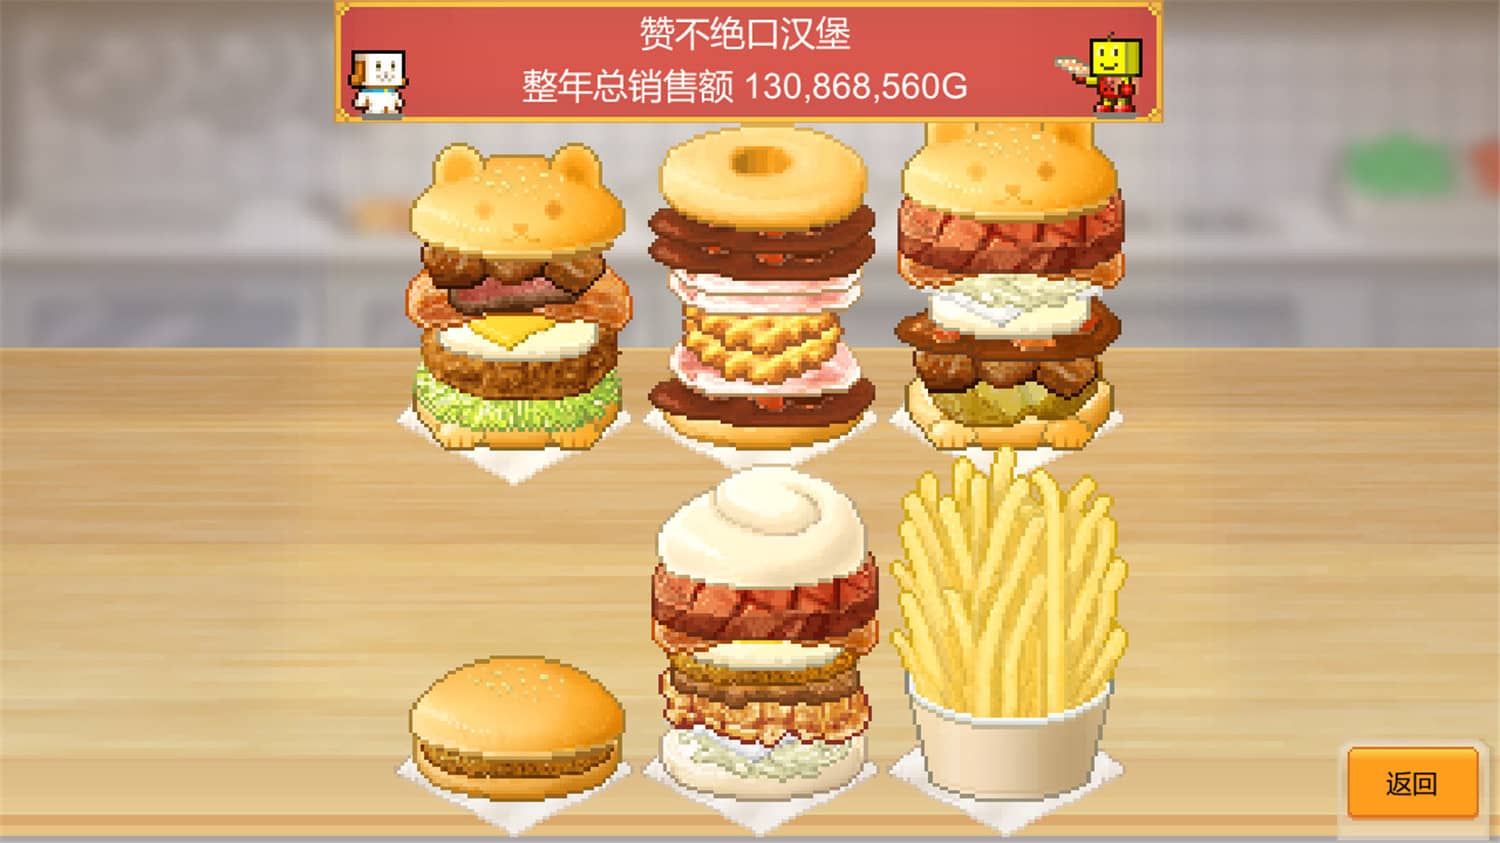 创意汉堡物语/Burger Bistro Story-6